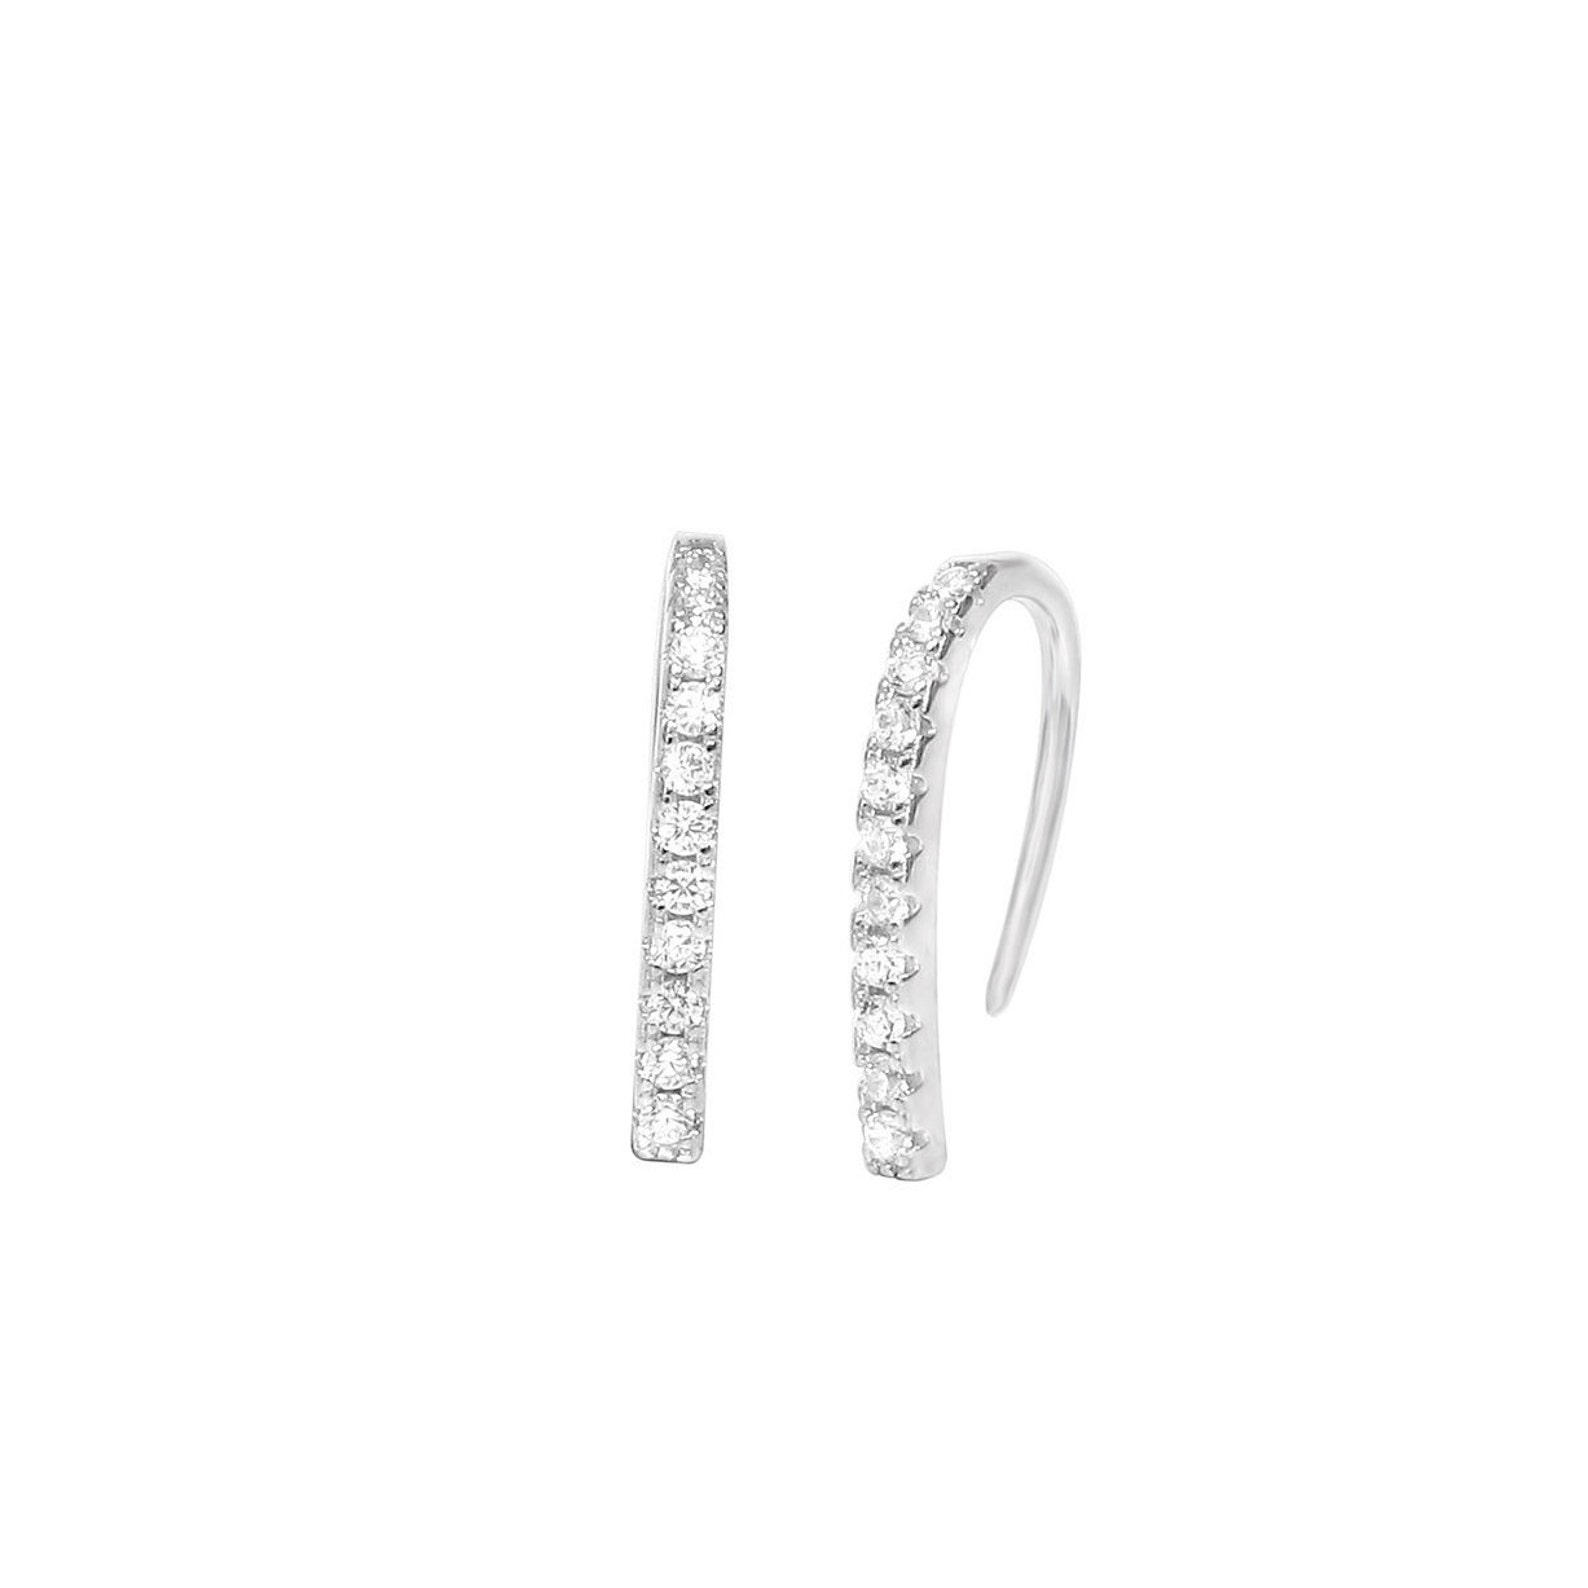 Hook Stud Earrings Suspender Earrings Sterling Silver 925 - Etsy UK